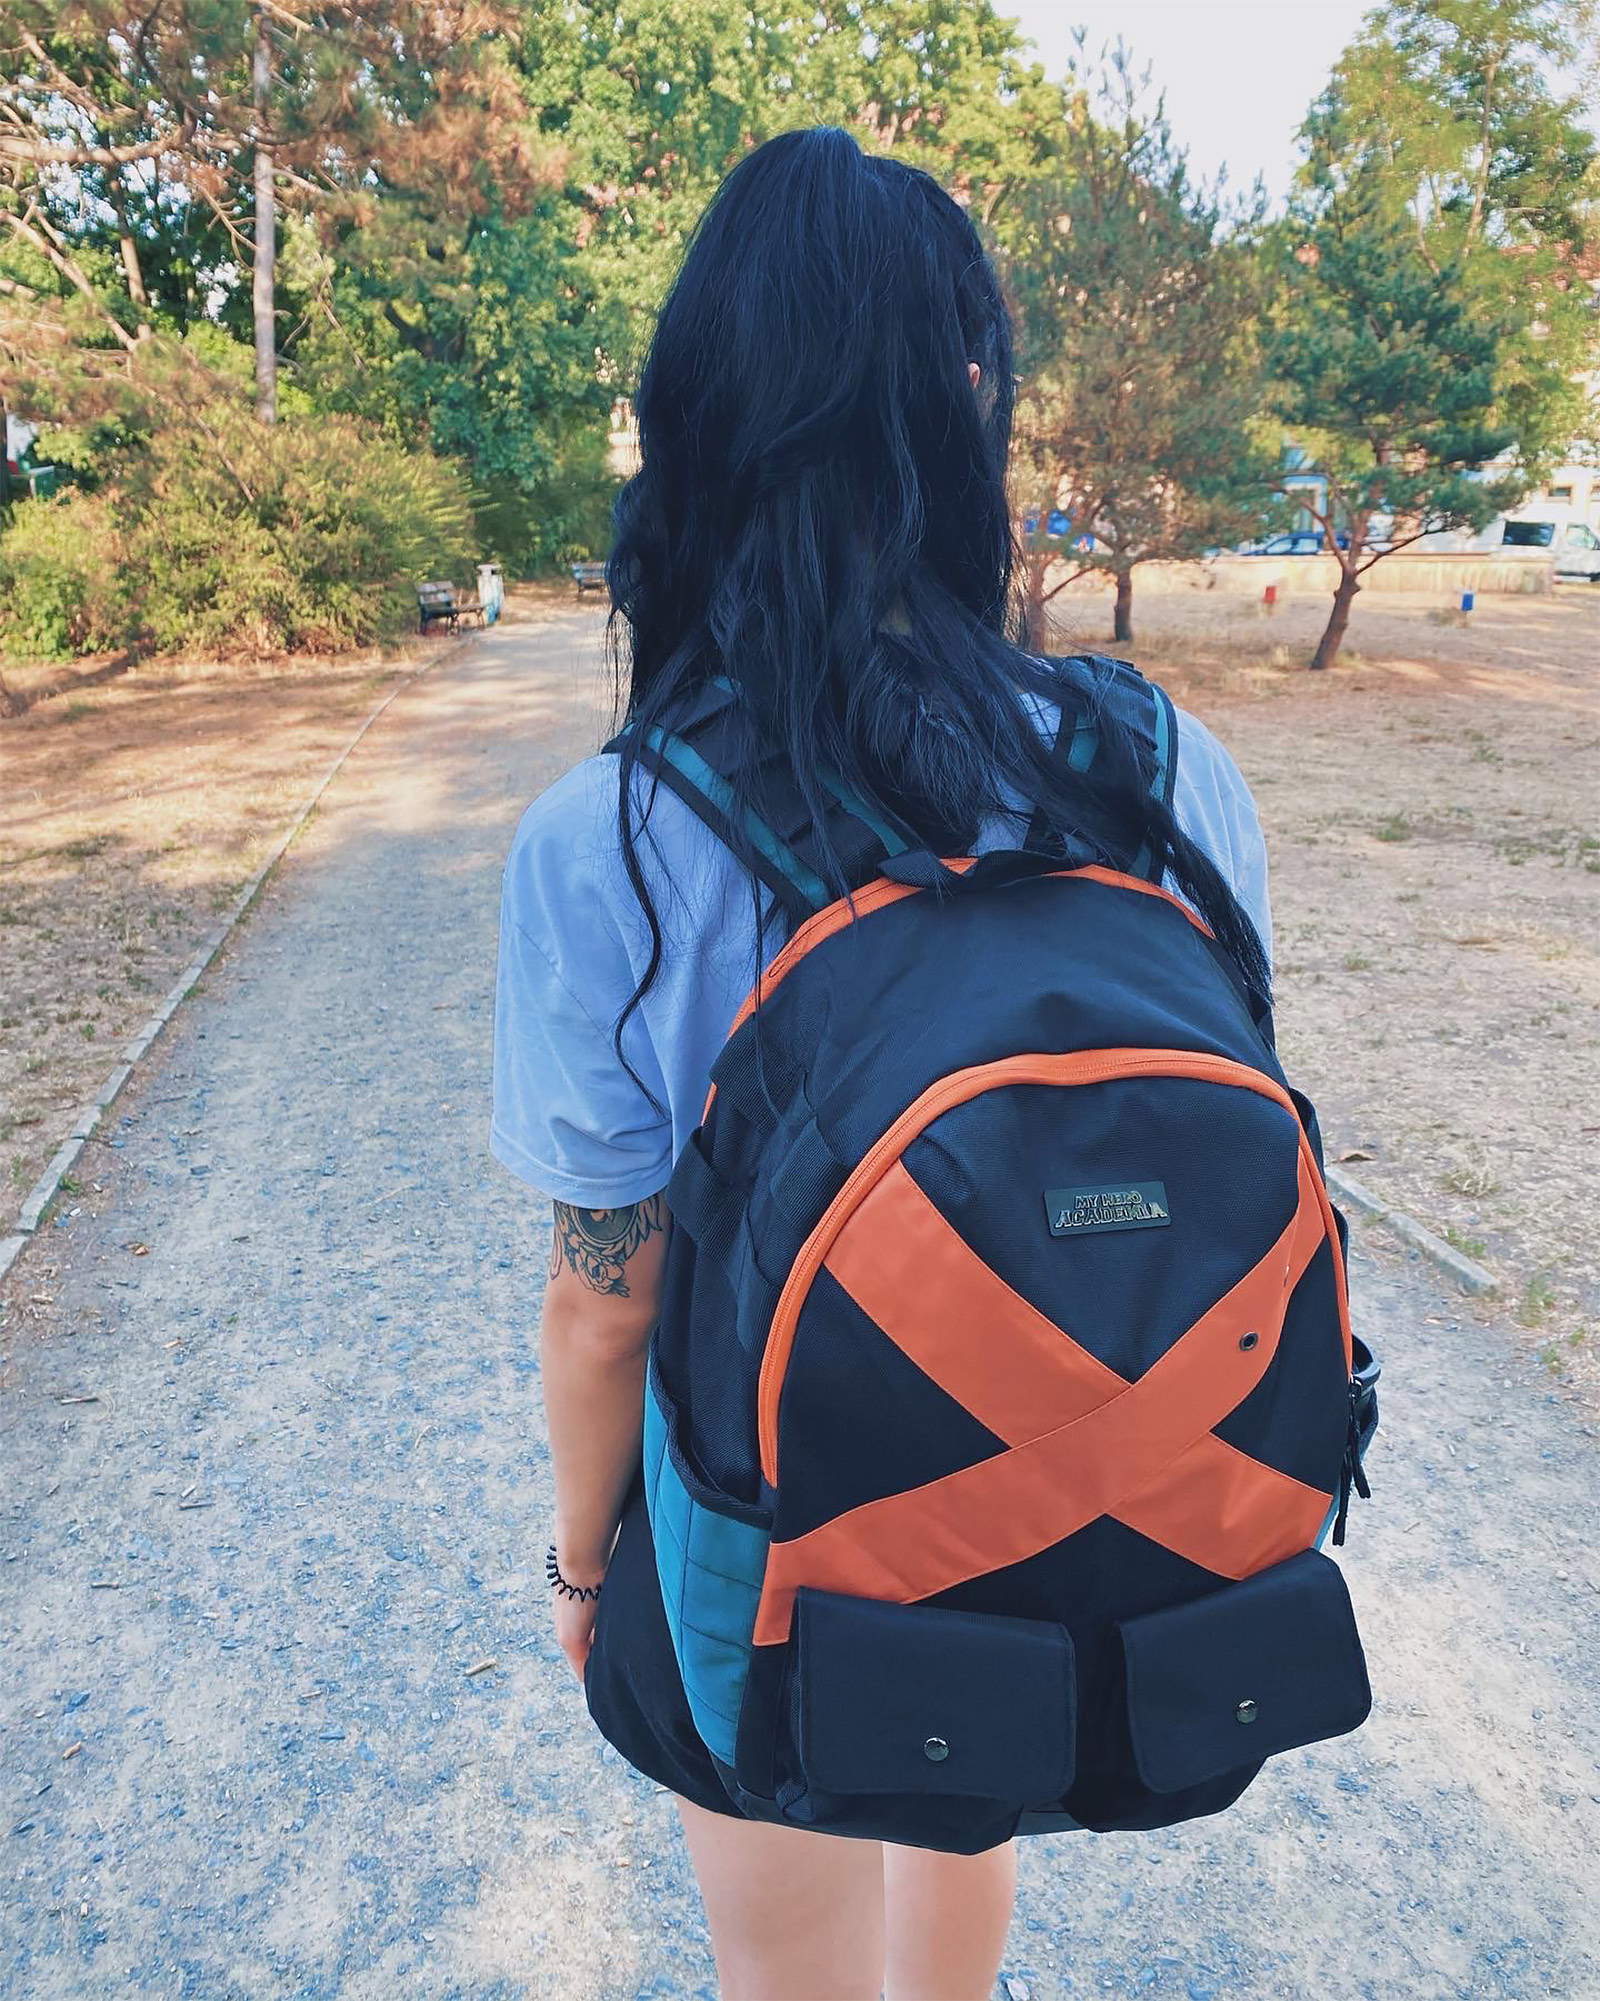 My Hero Academia - Bakugo Backpack